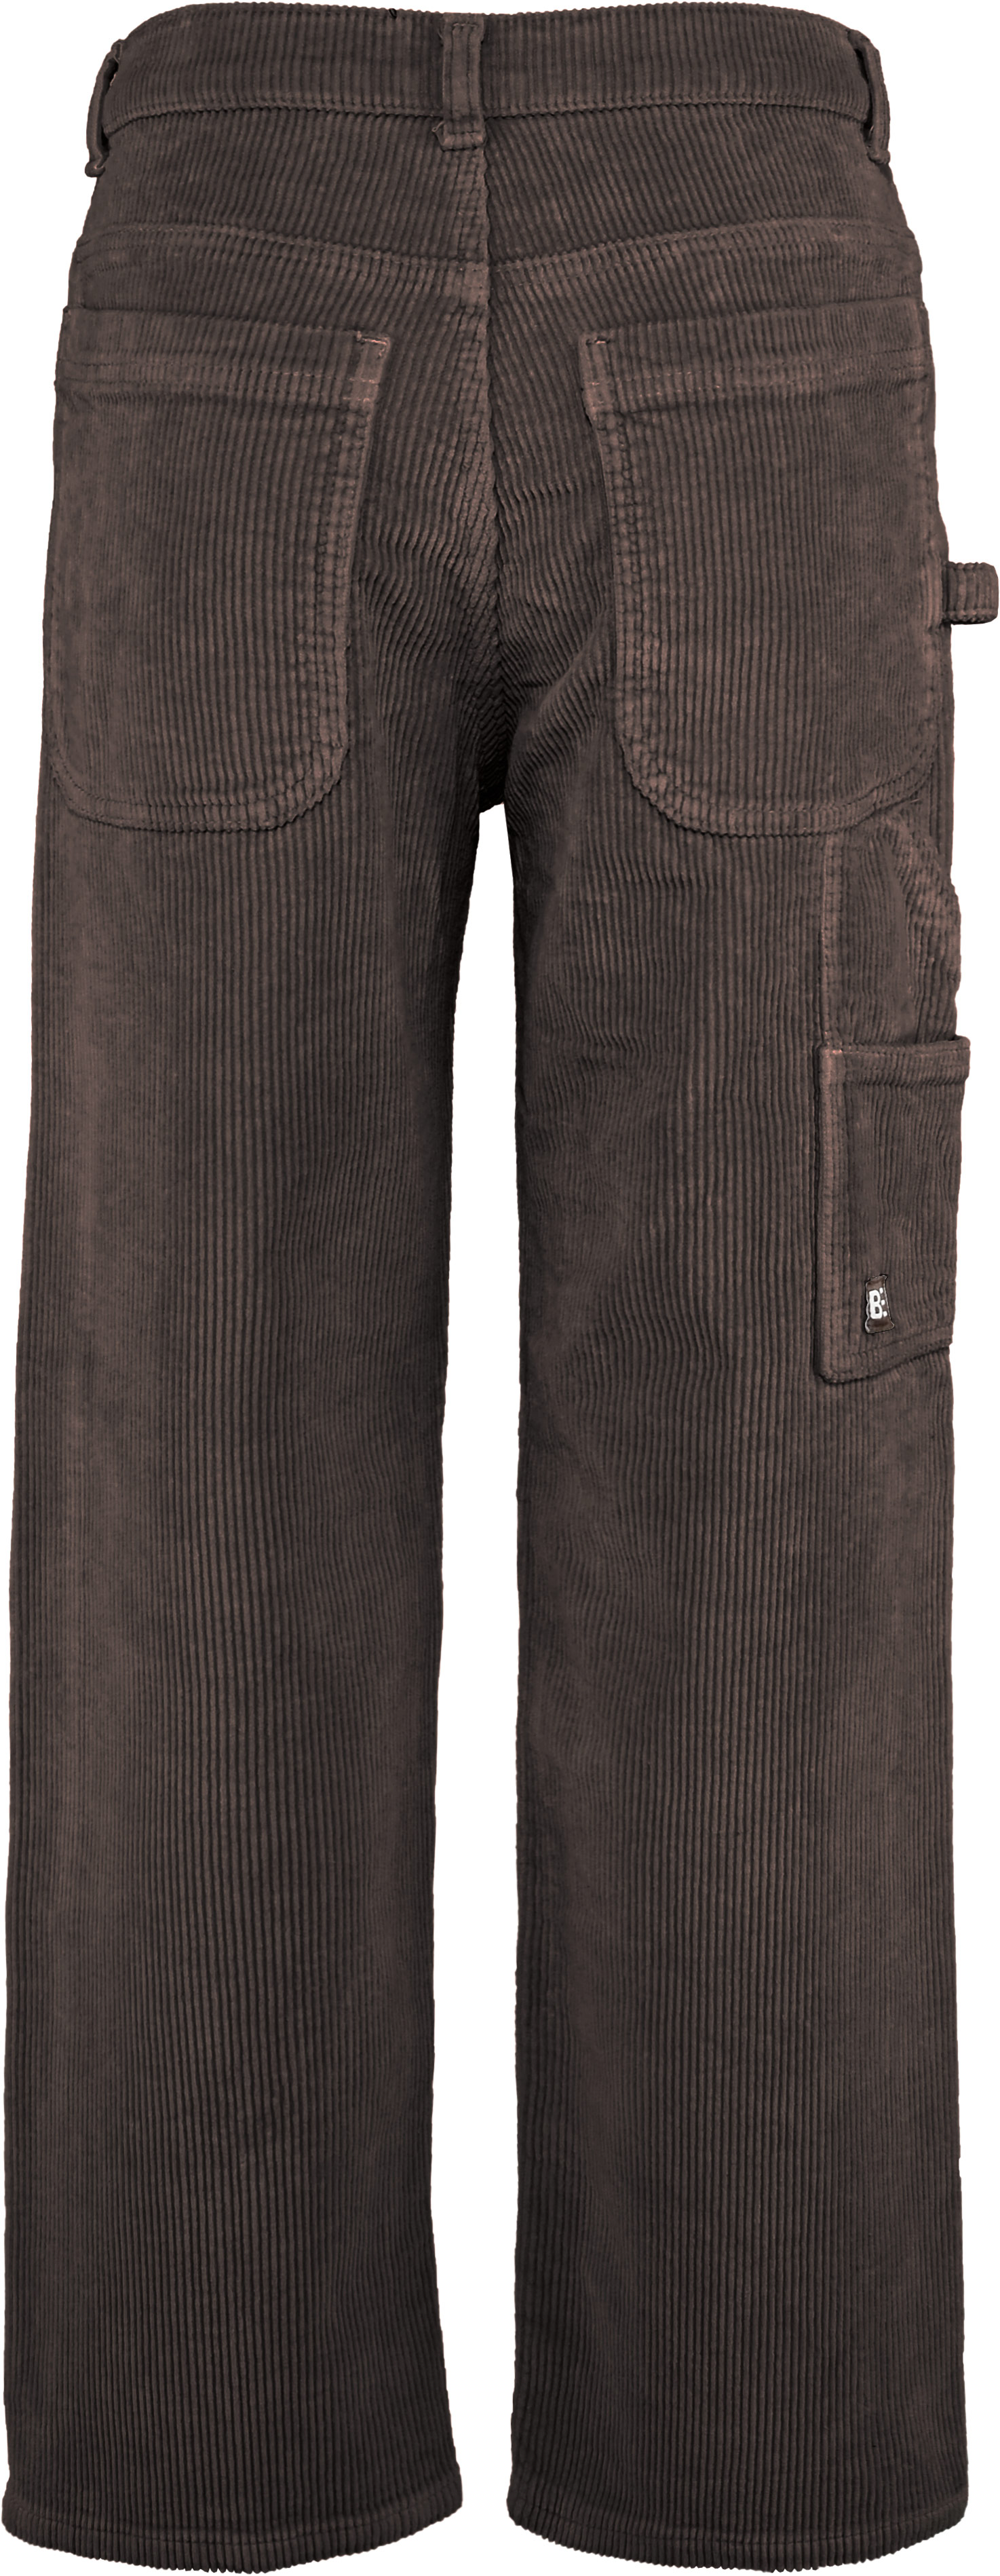 2859-Boys Worker Baggy Pant Corduroy, verfügbar in Normal